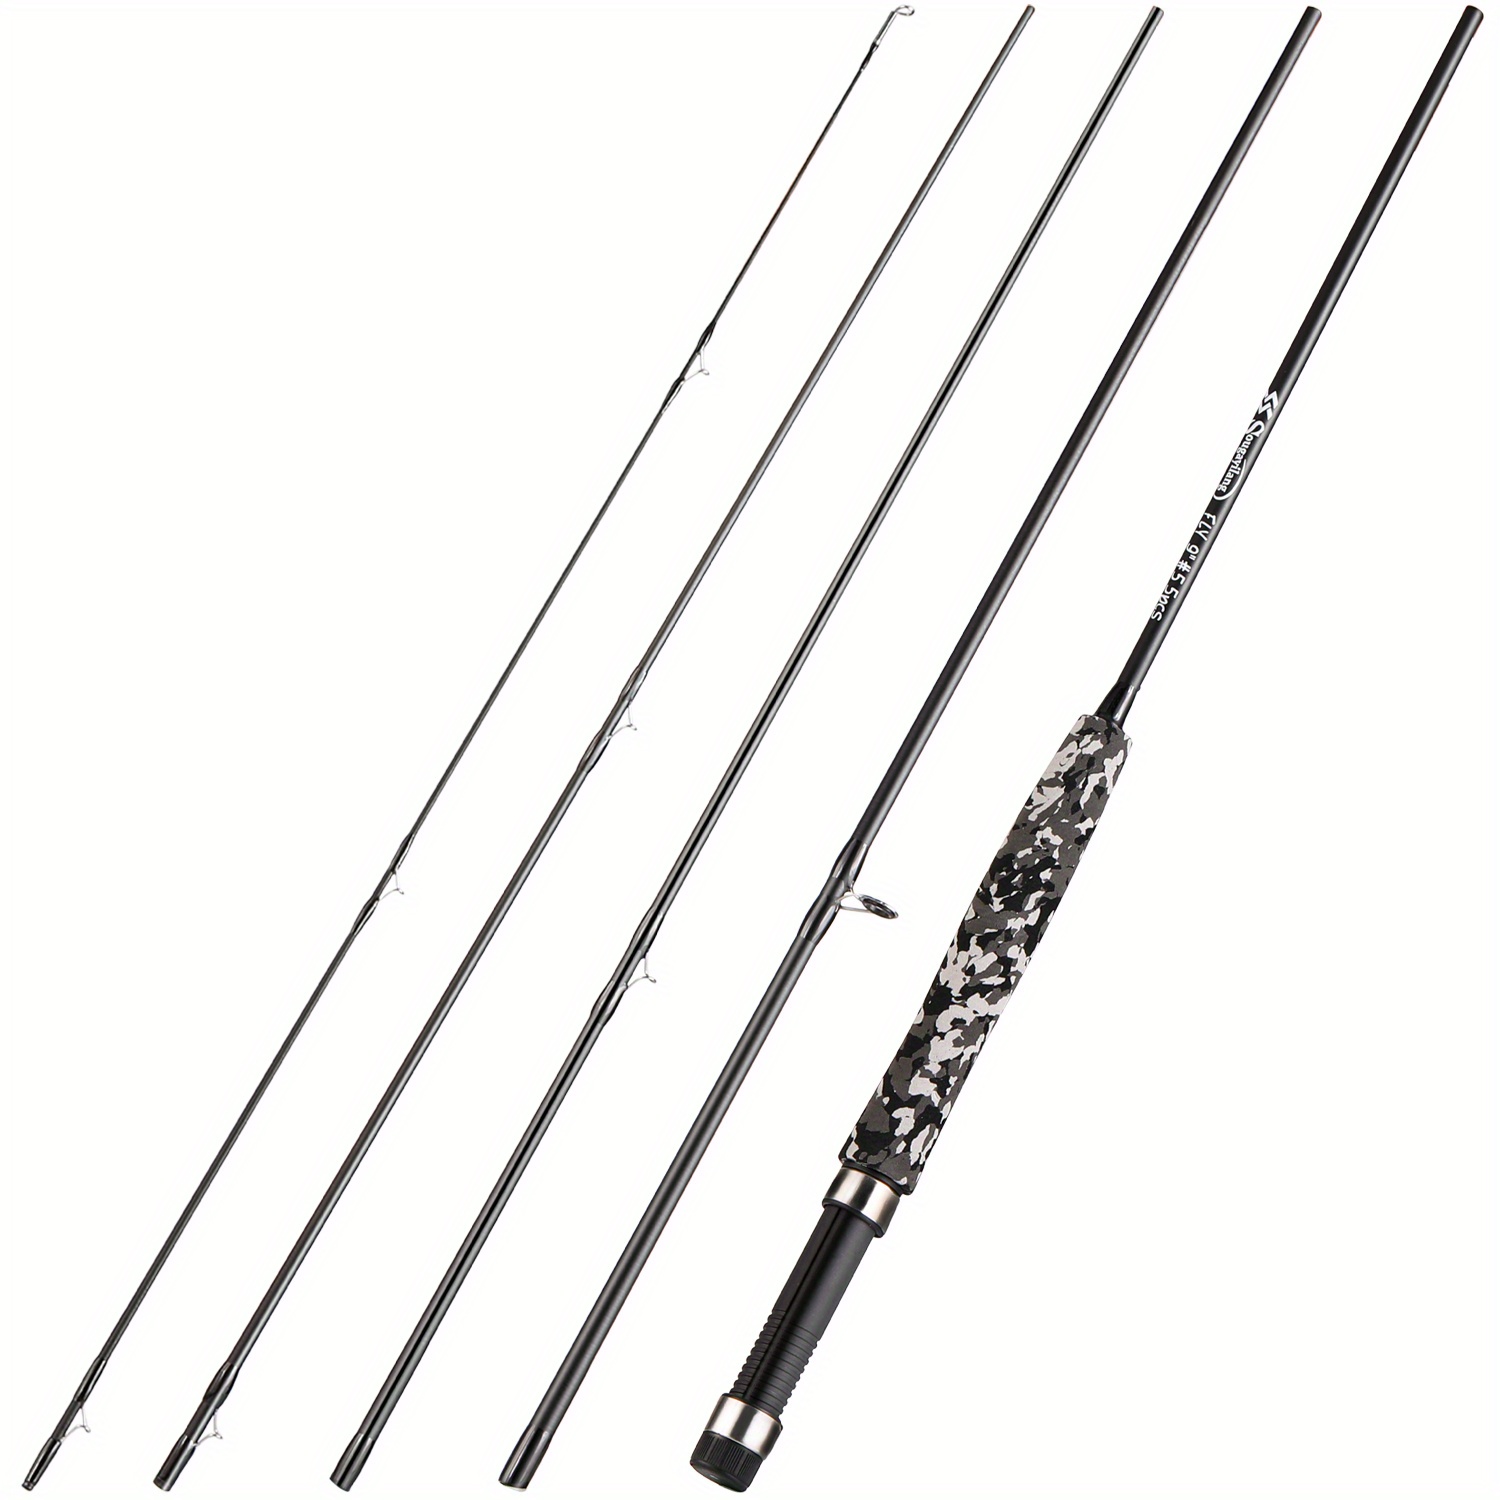 Carbon Fiber Fishing Rod Set 7m/9ft 5 6WT, Reel, Tackle Bag